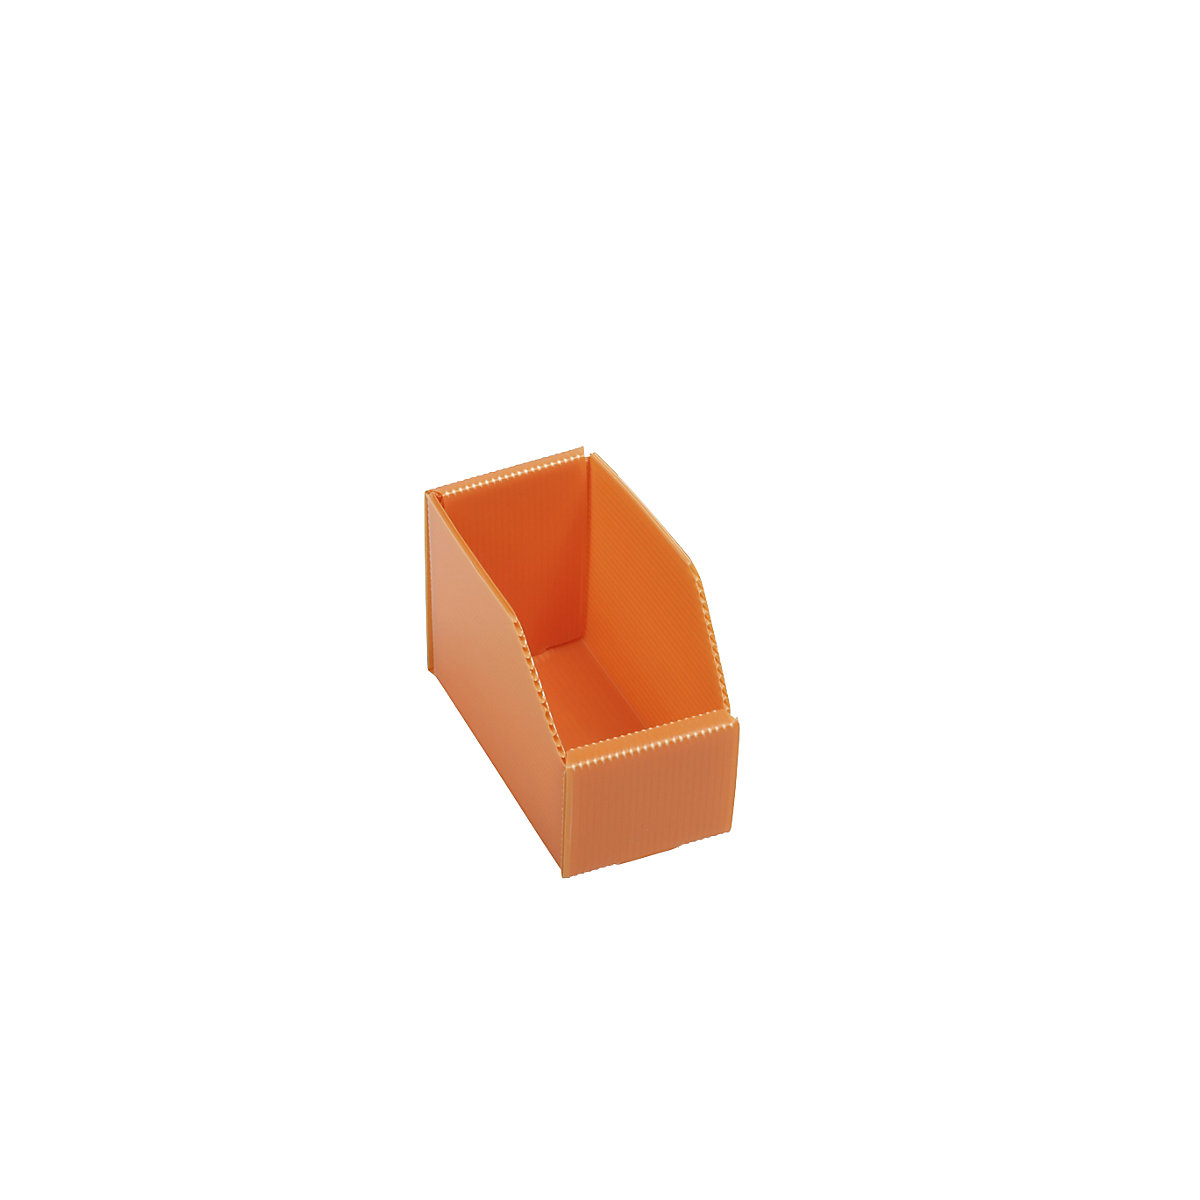 Plastična kutija za regale, sklopiva, DxŠxV 150 x 75 x 100 mm, u narančastoj boji, pak. 25 kom.-6